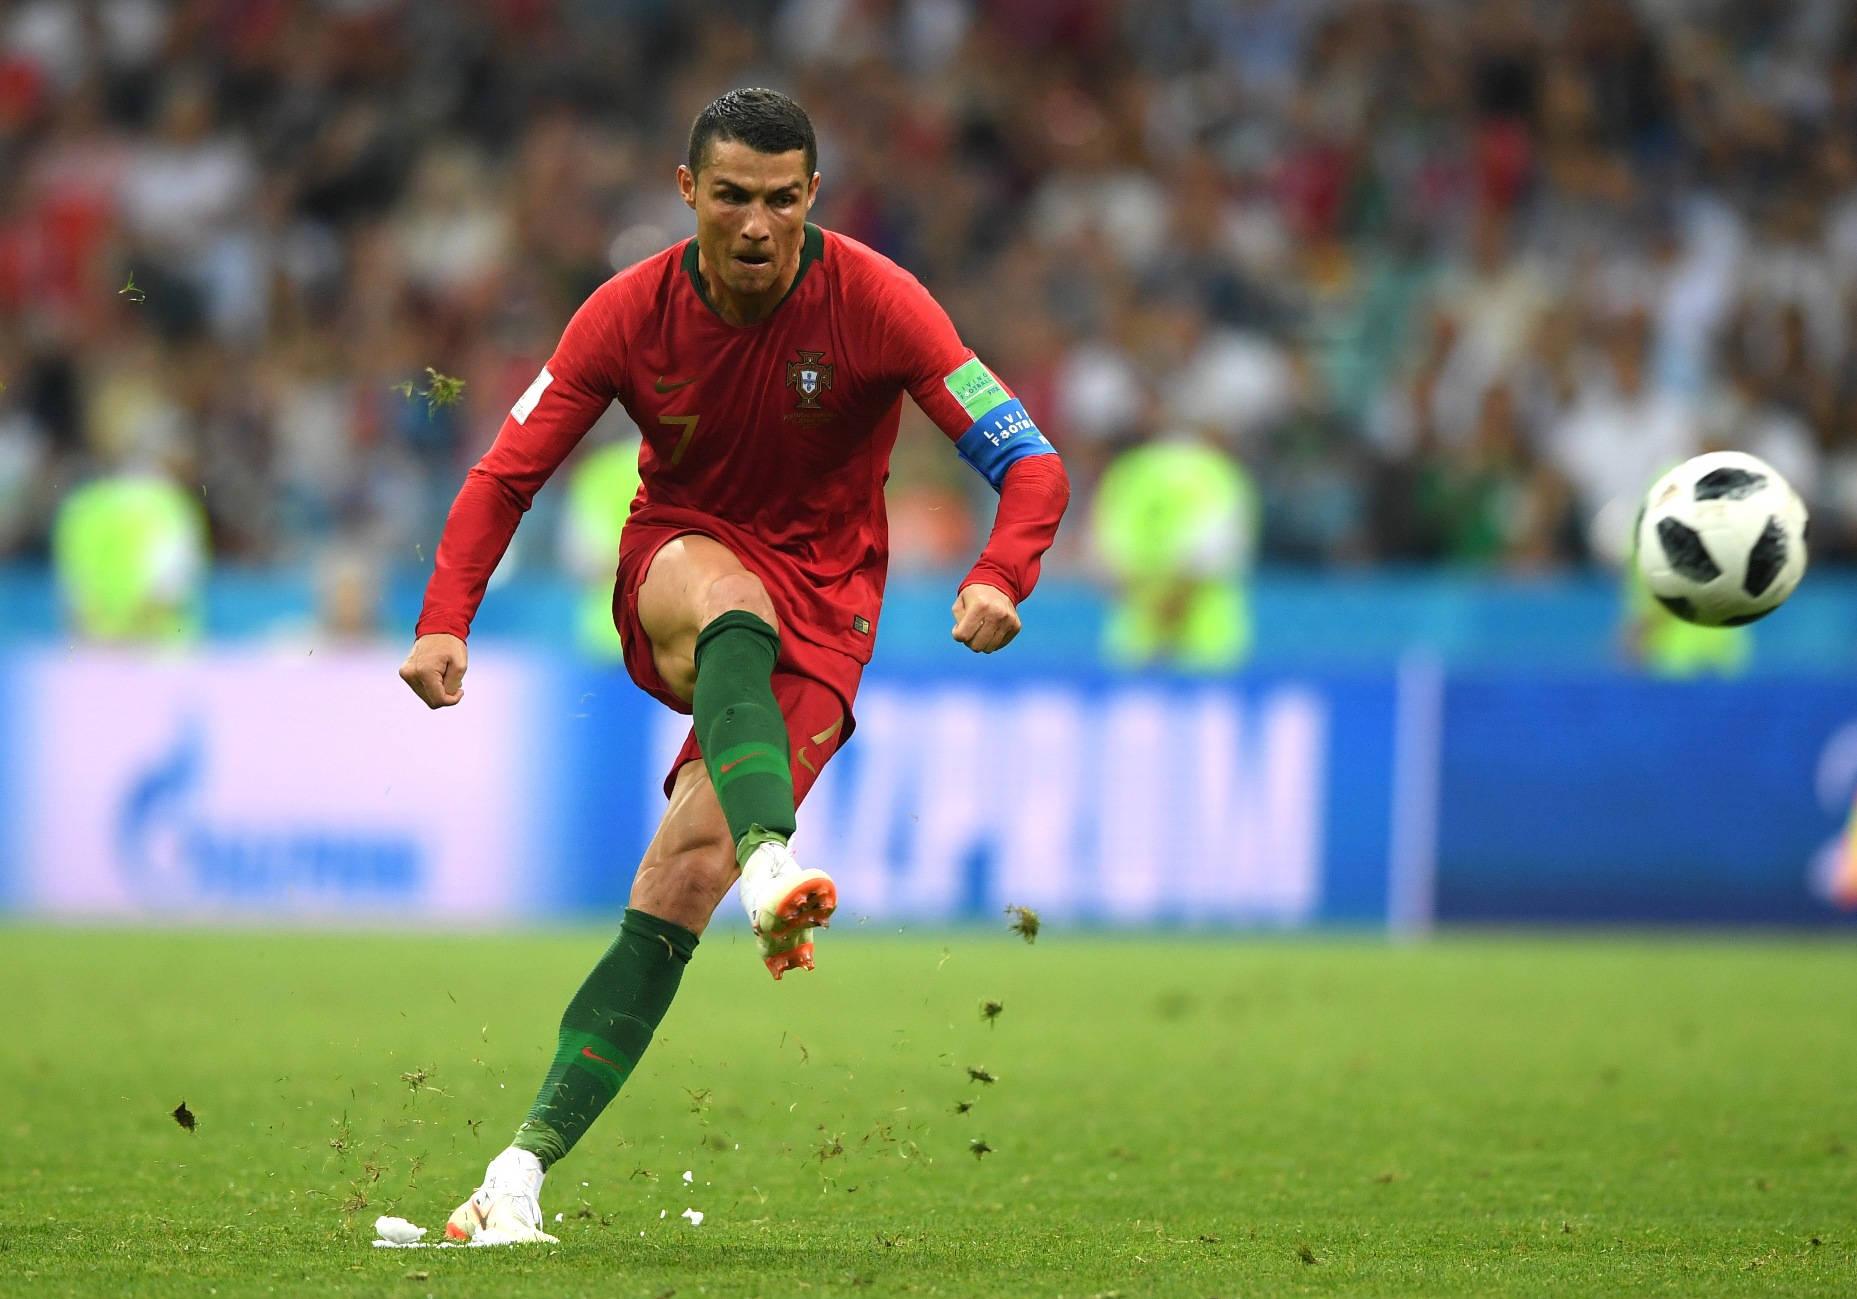 Cristiano Ronaldo Sends An Incredible Kick In The Air